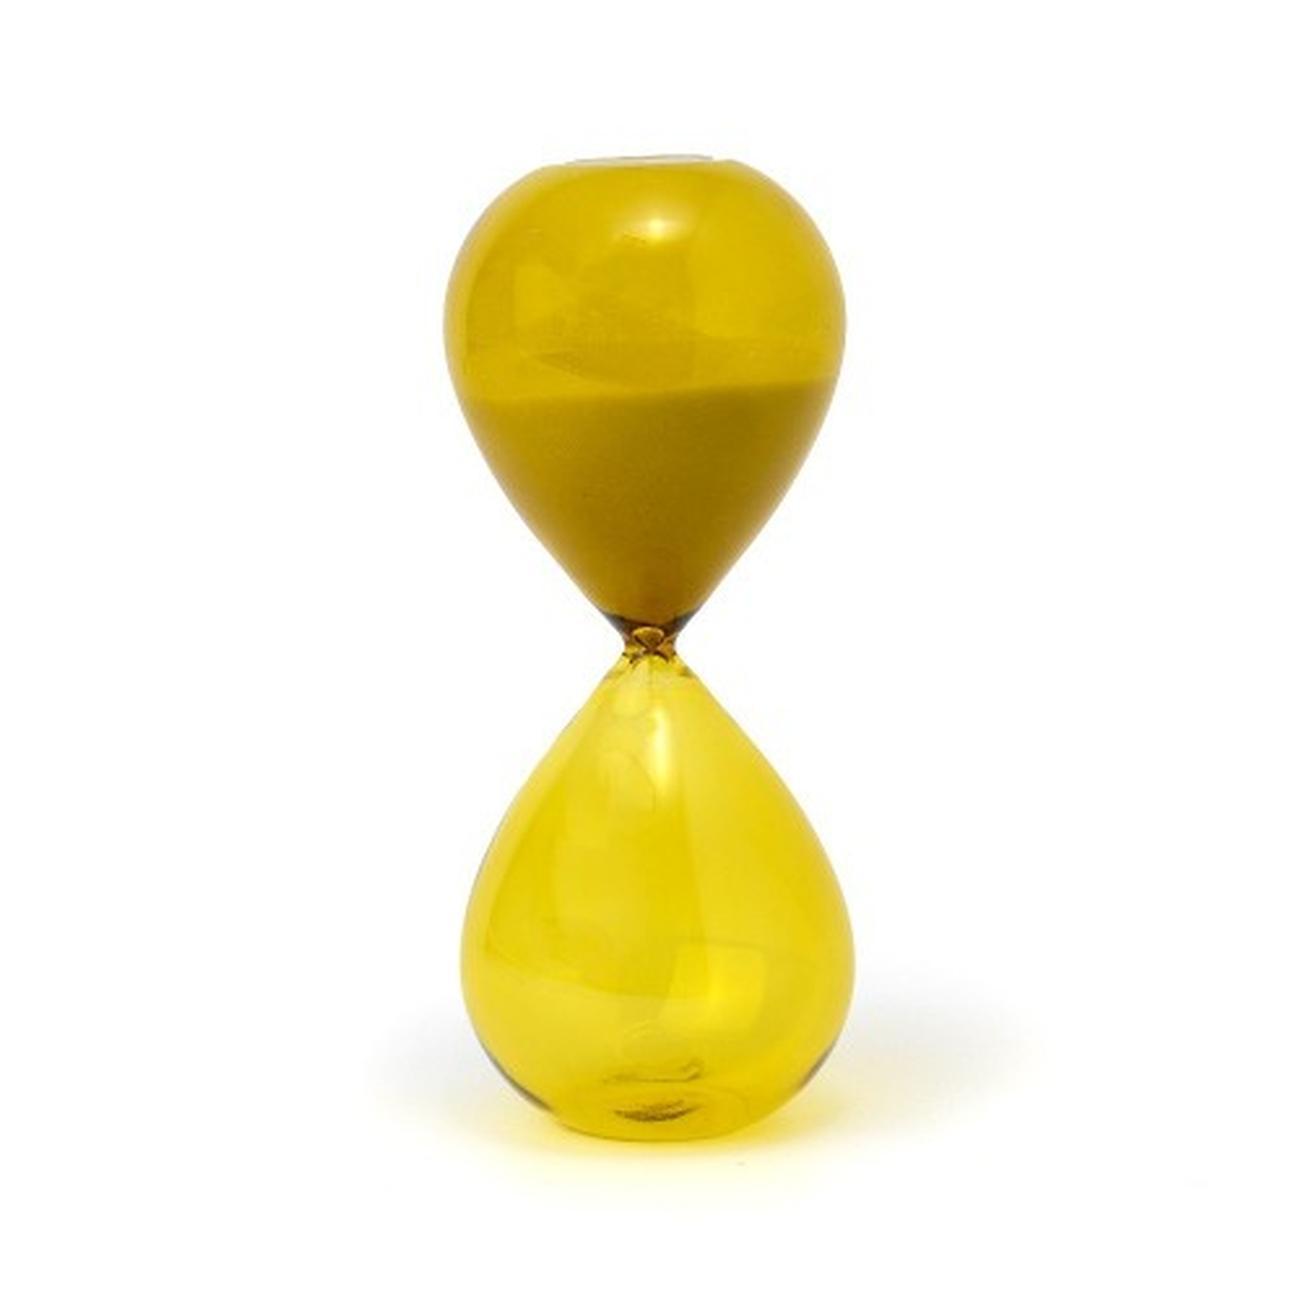 gen-hourglass-chartreuse-ombre-30-min - Designworks Ink Hourglass Chartreuse Ombre 30 Minutes